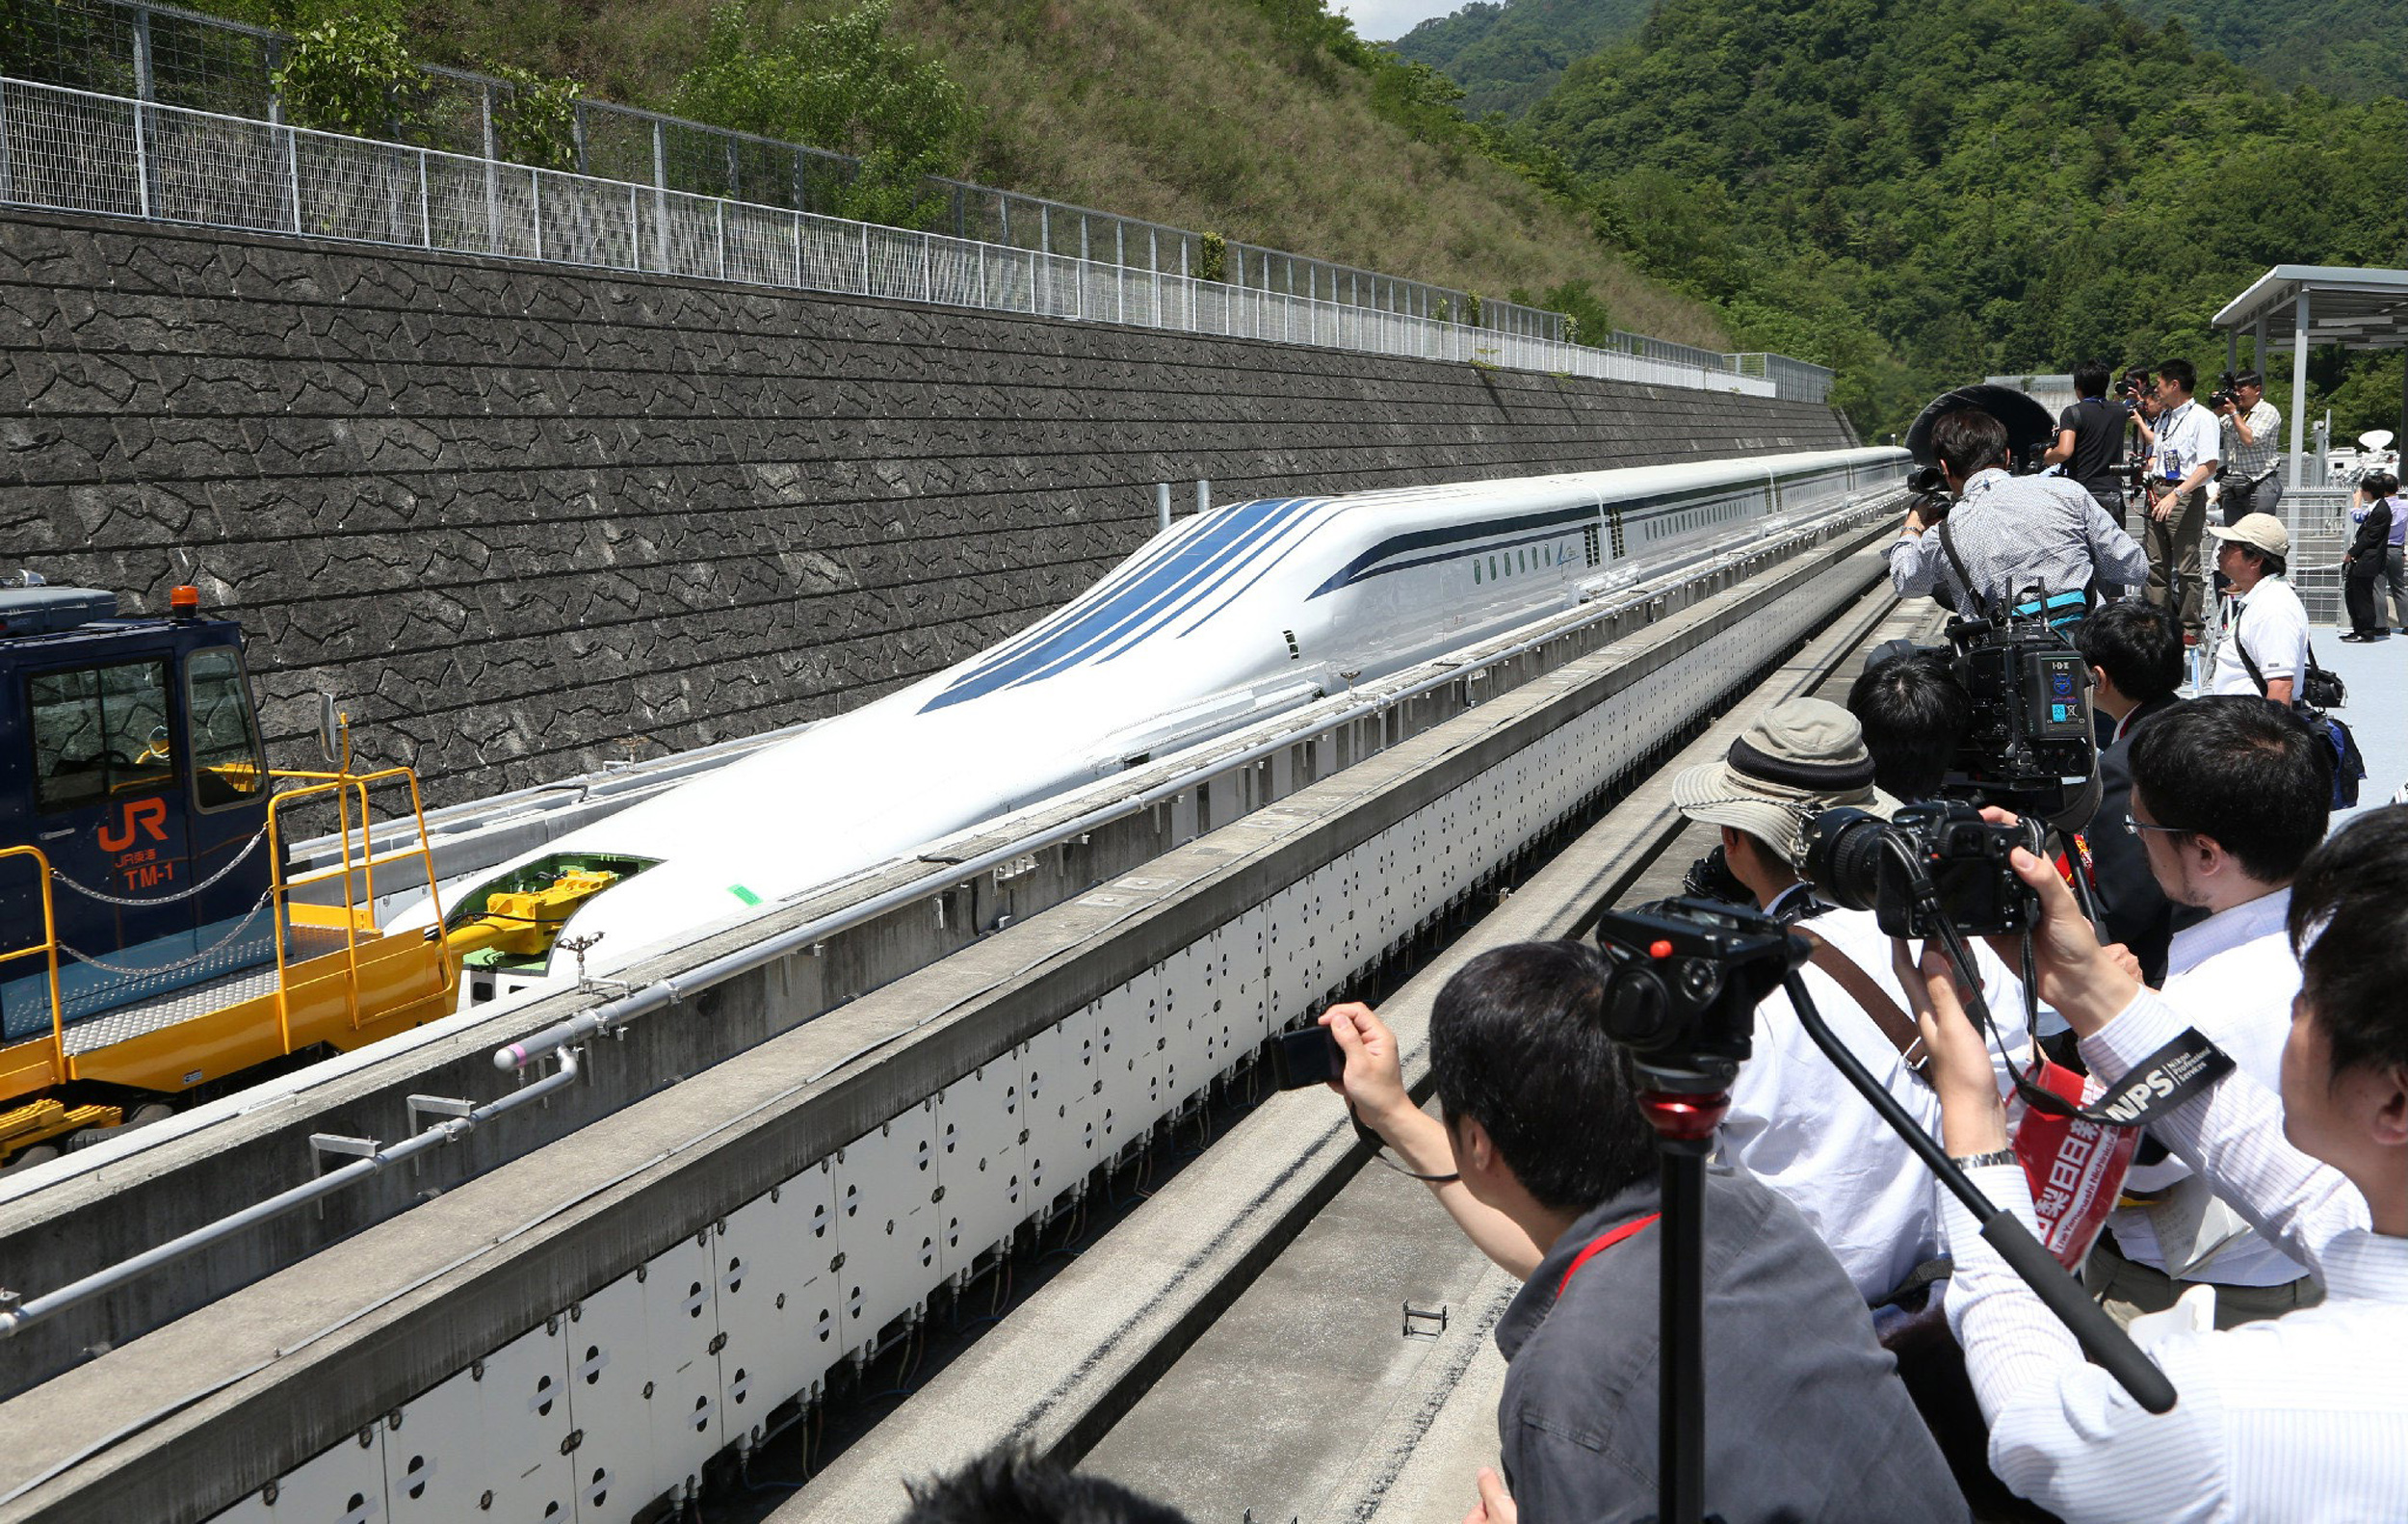 Поезд едет 80 километров в час. Маглев l0, Япония 603 км/ч. Поезд Маглев Япония. Маглев поезд на магнитной подушке Япония. Локомотив Маглев.